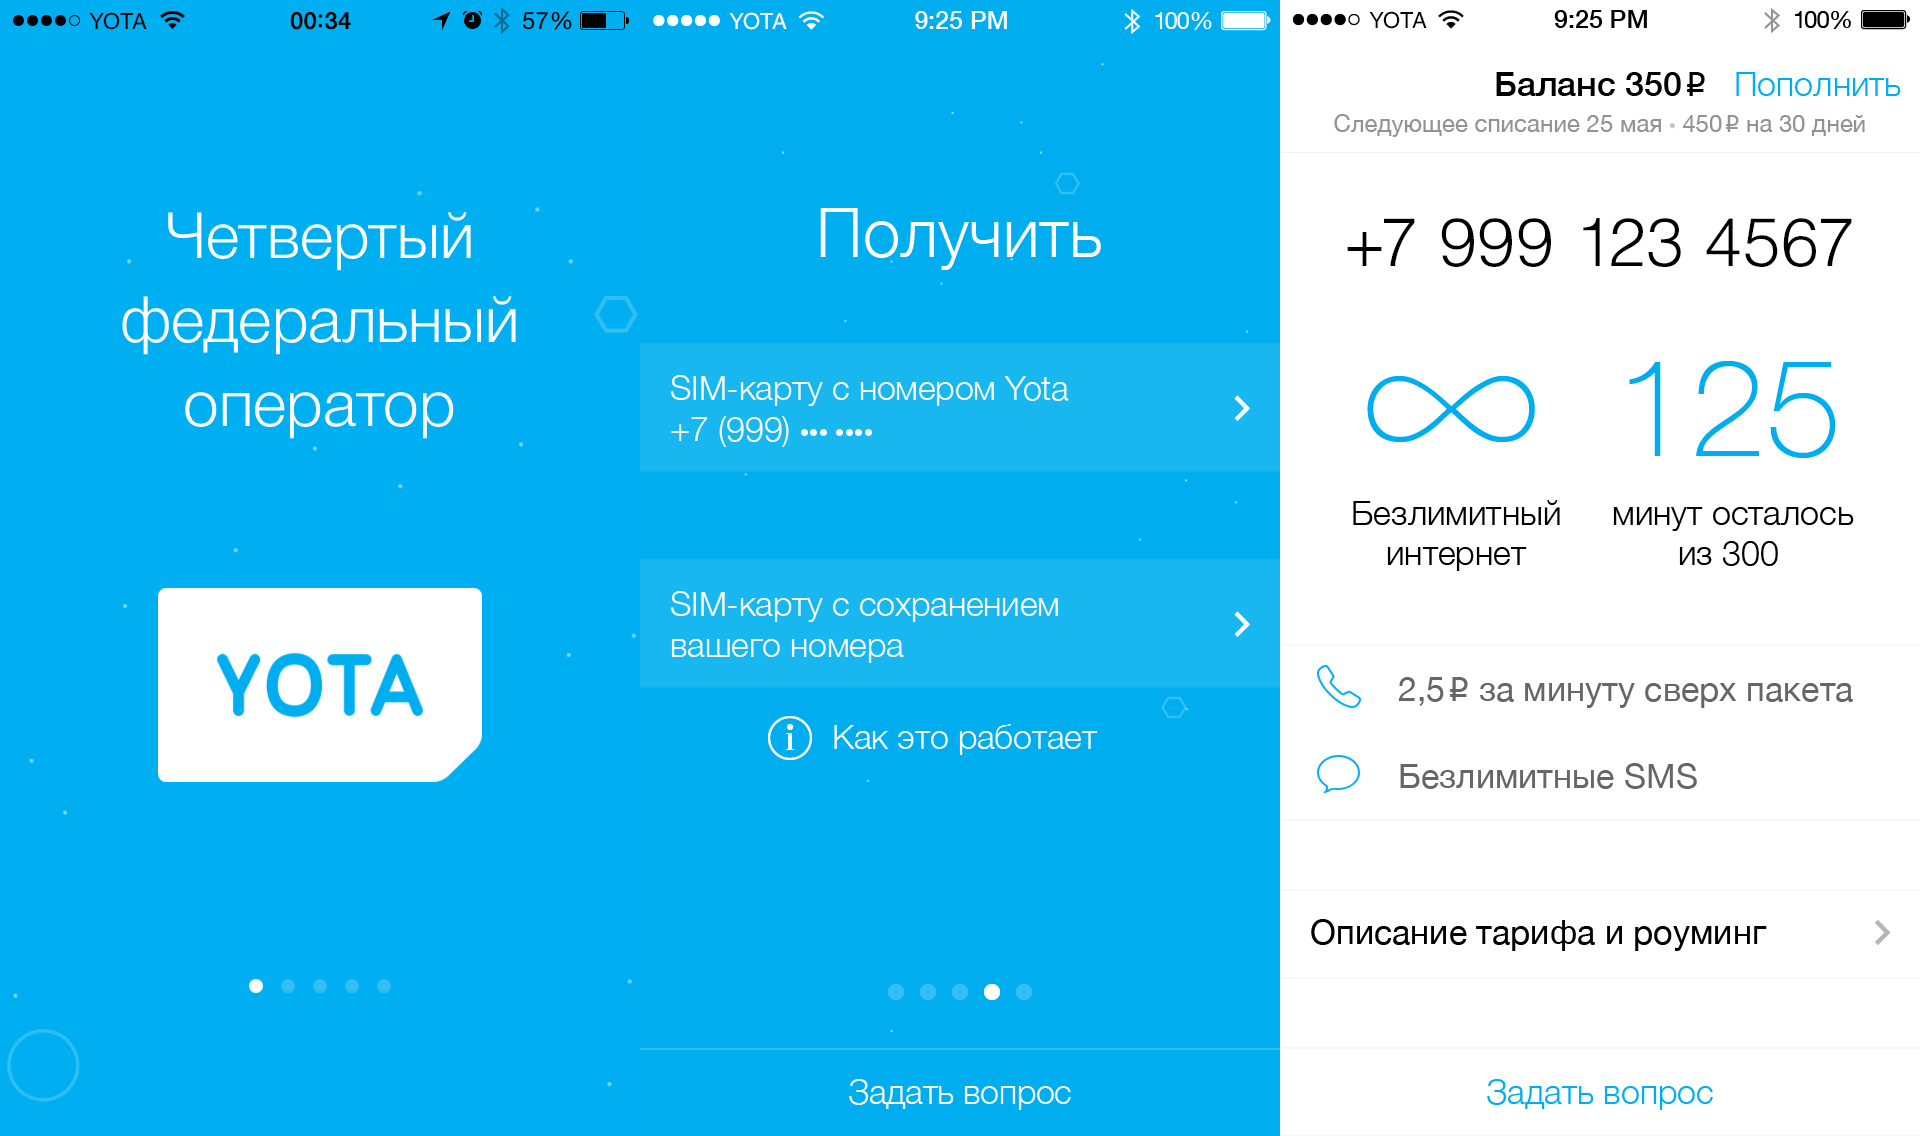 Как проверить баланс на симке yota через интернет, телефон тарифкин.ру
как проверить баланс на симке yota через интернет, телефон